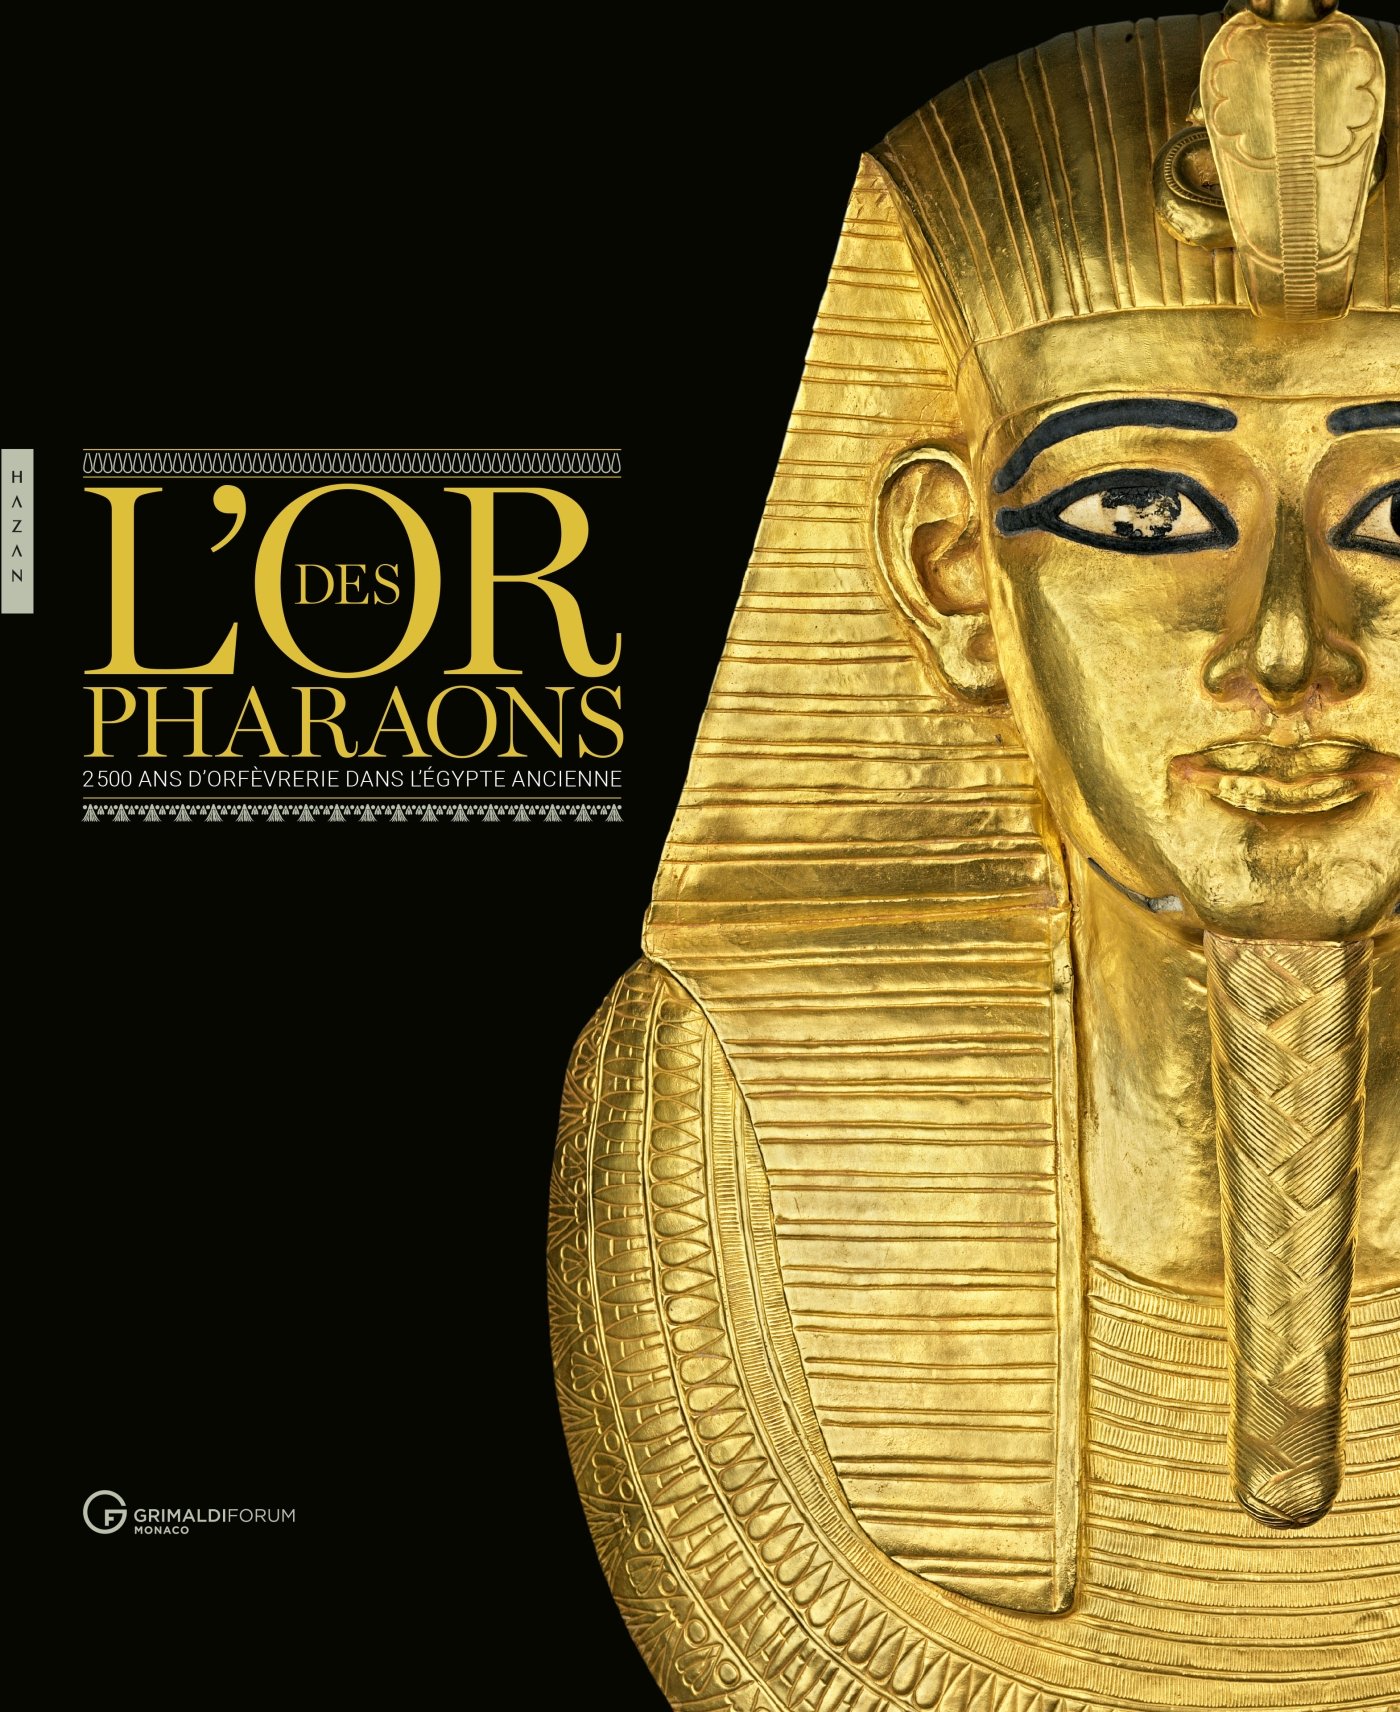 L'or des pharaons. 2500 d'orfèvrerie dans l'Egypte ancienne, (cat. expo. Forum Grimaldi, Monaco, juillet-septembre 2018), 2018.